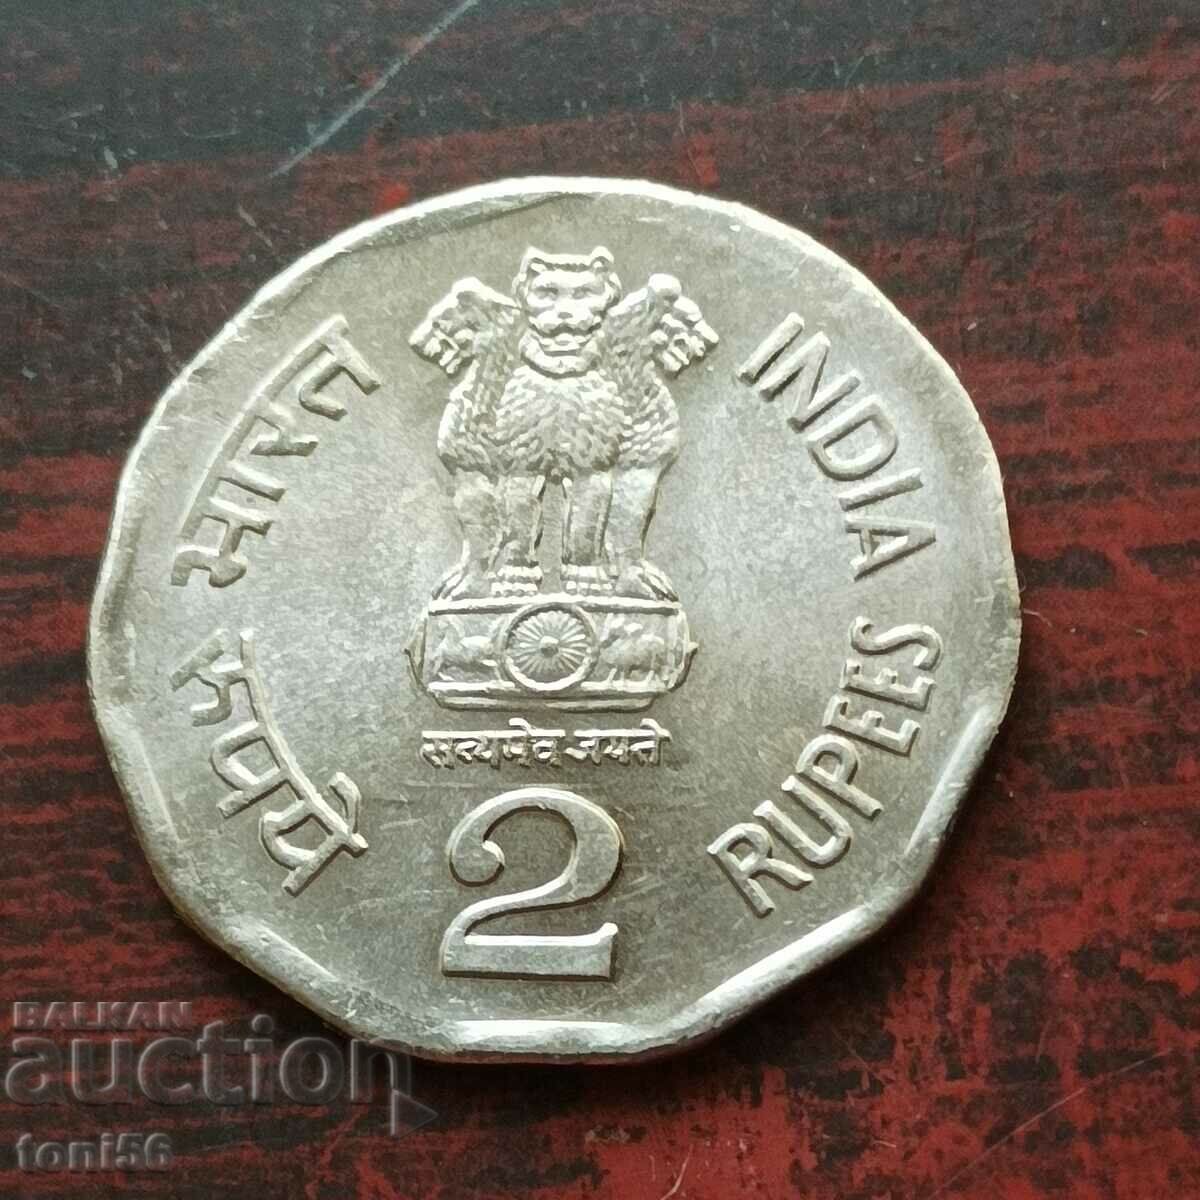 India 2000 Rupees